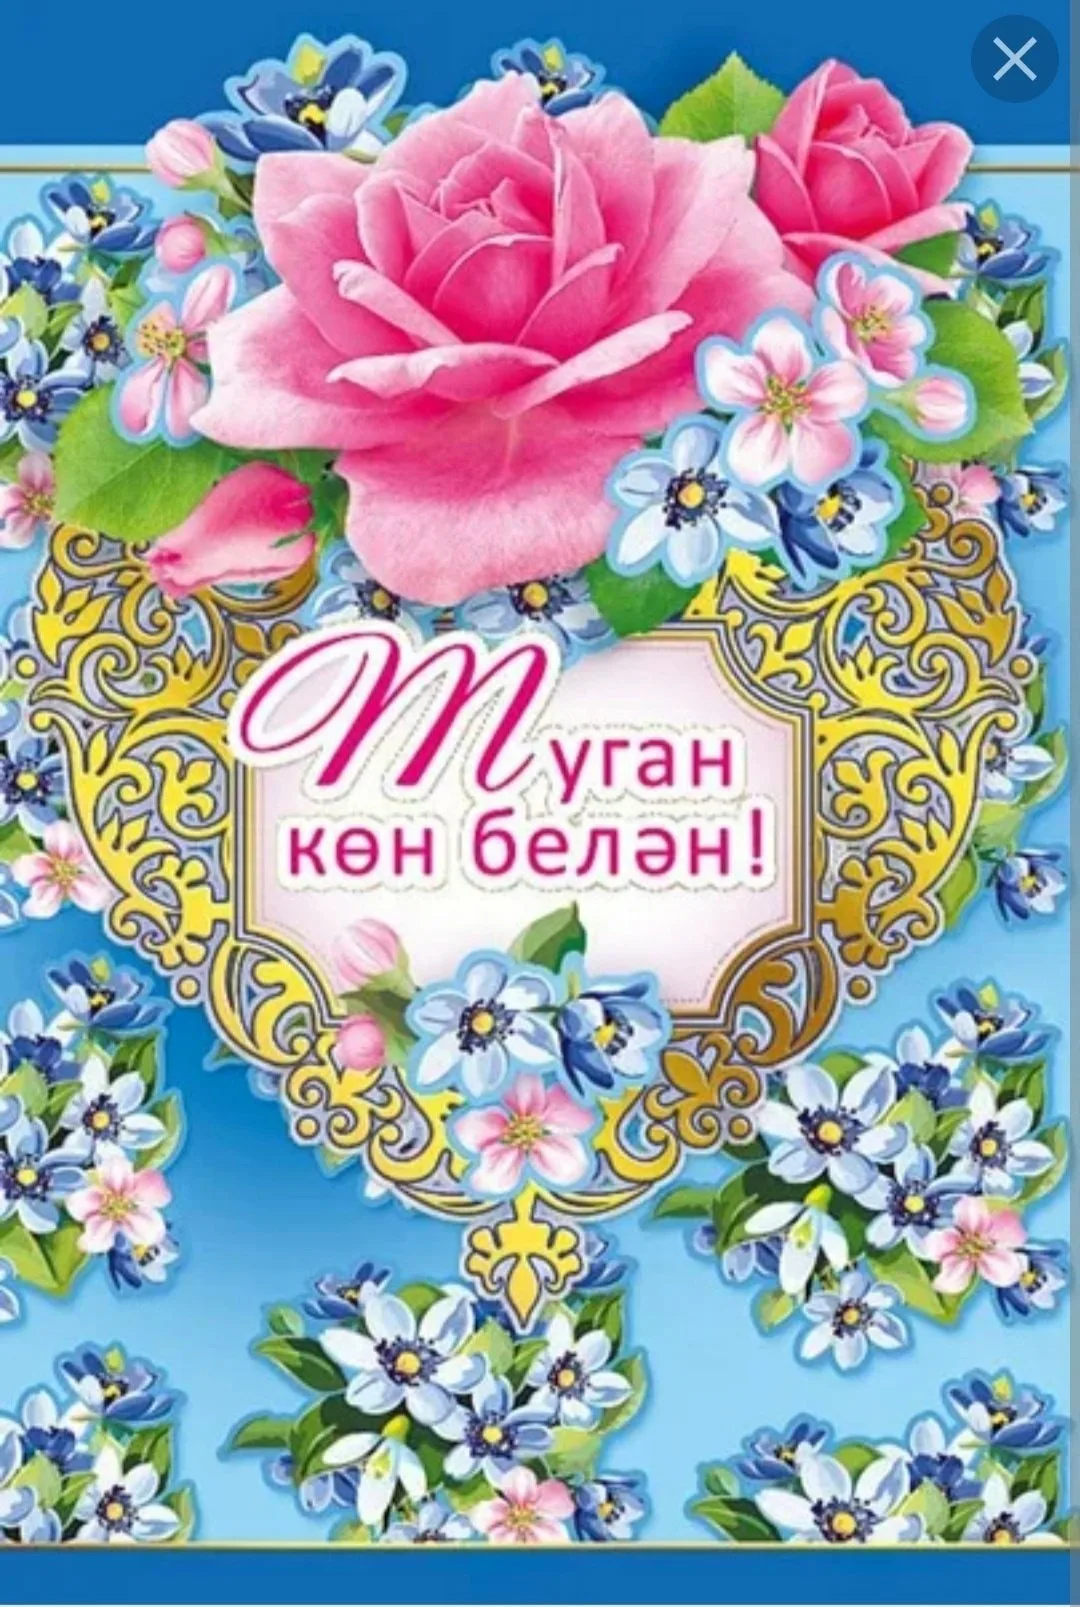 #Самое #красивое #поздравление на #татарском языке - YouTube